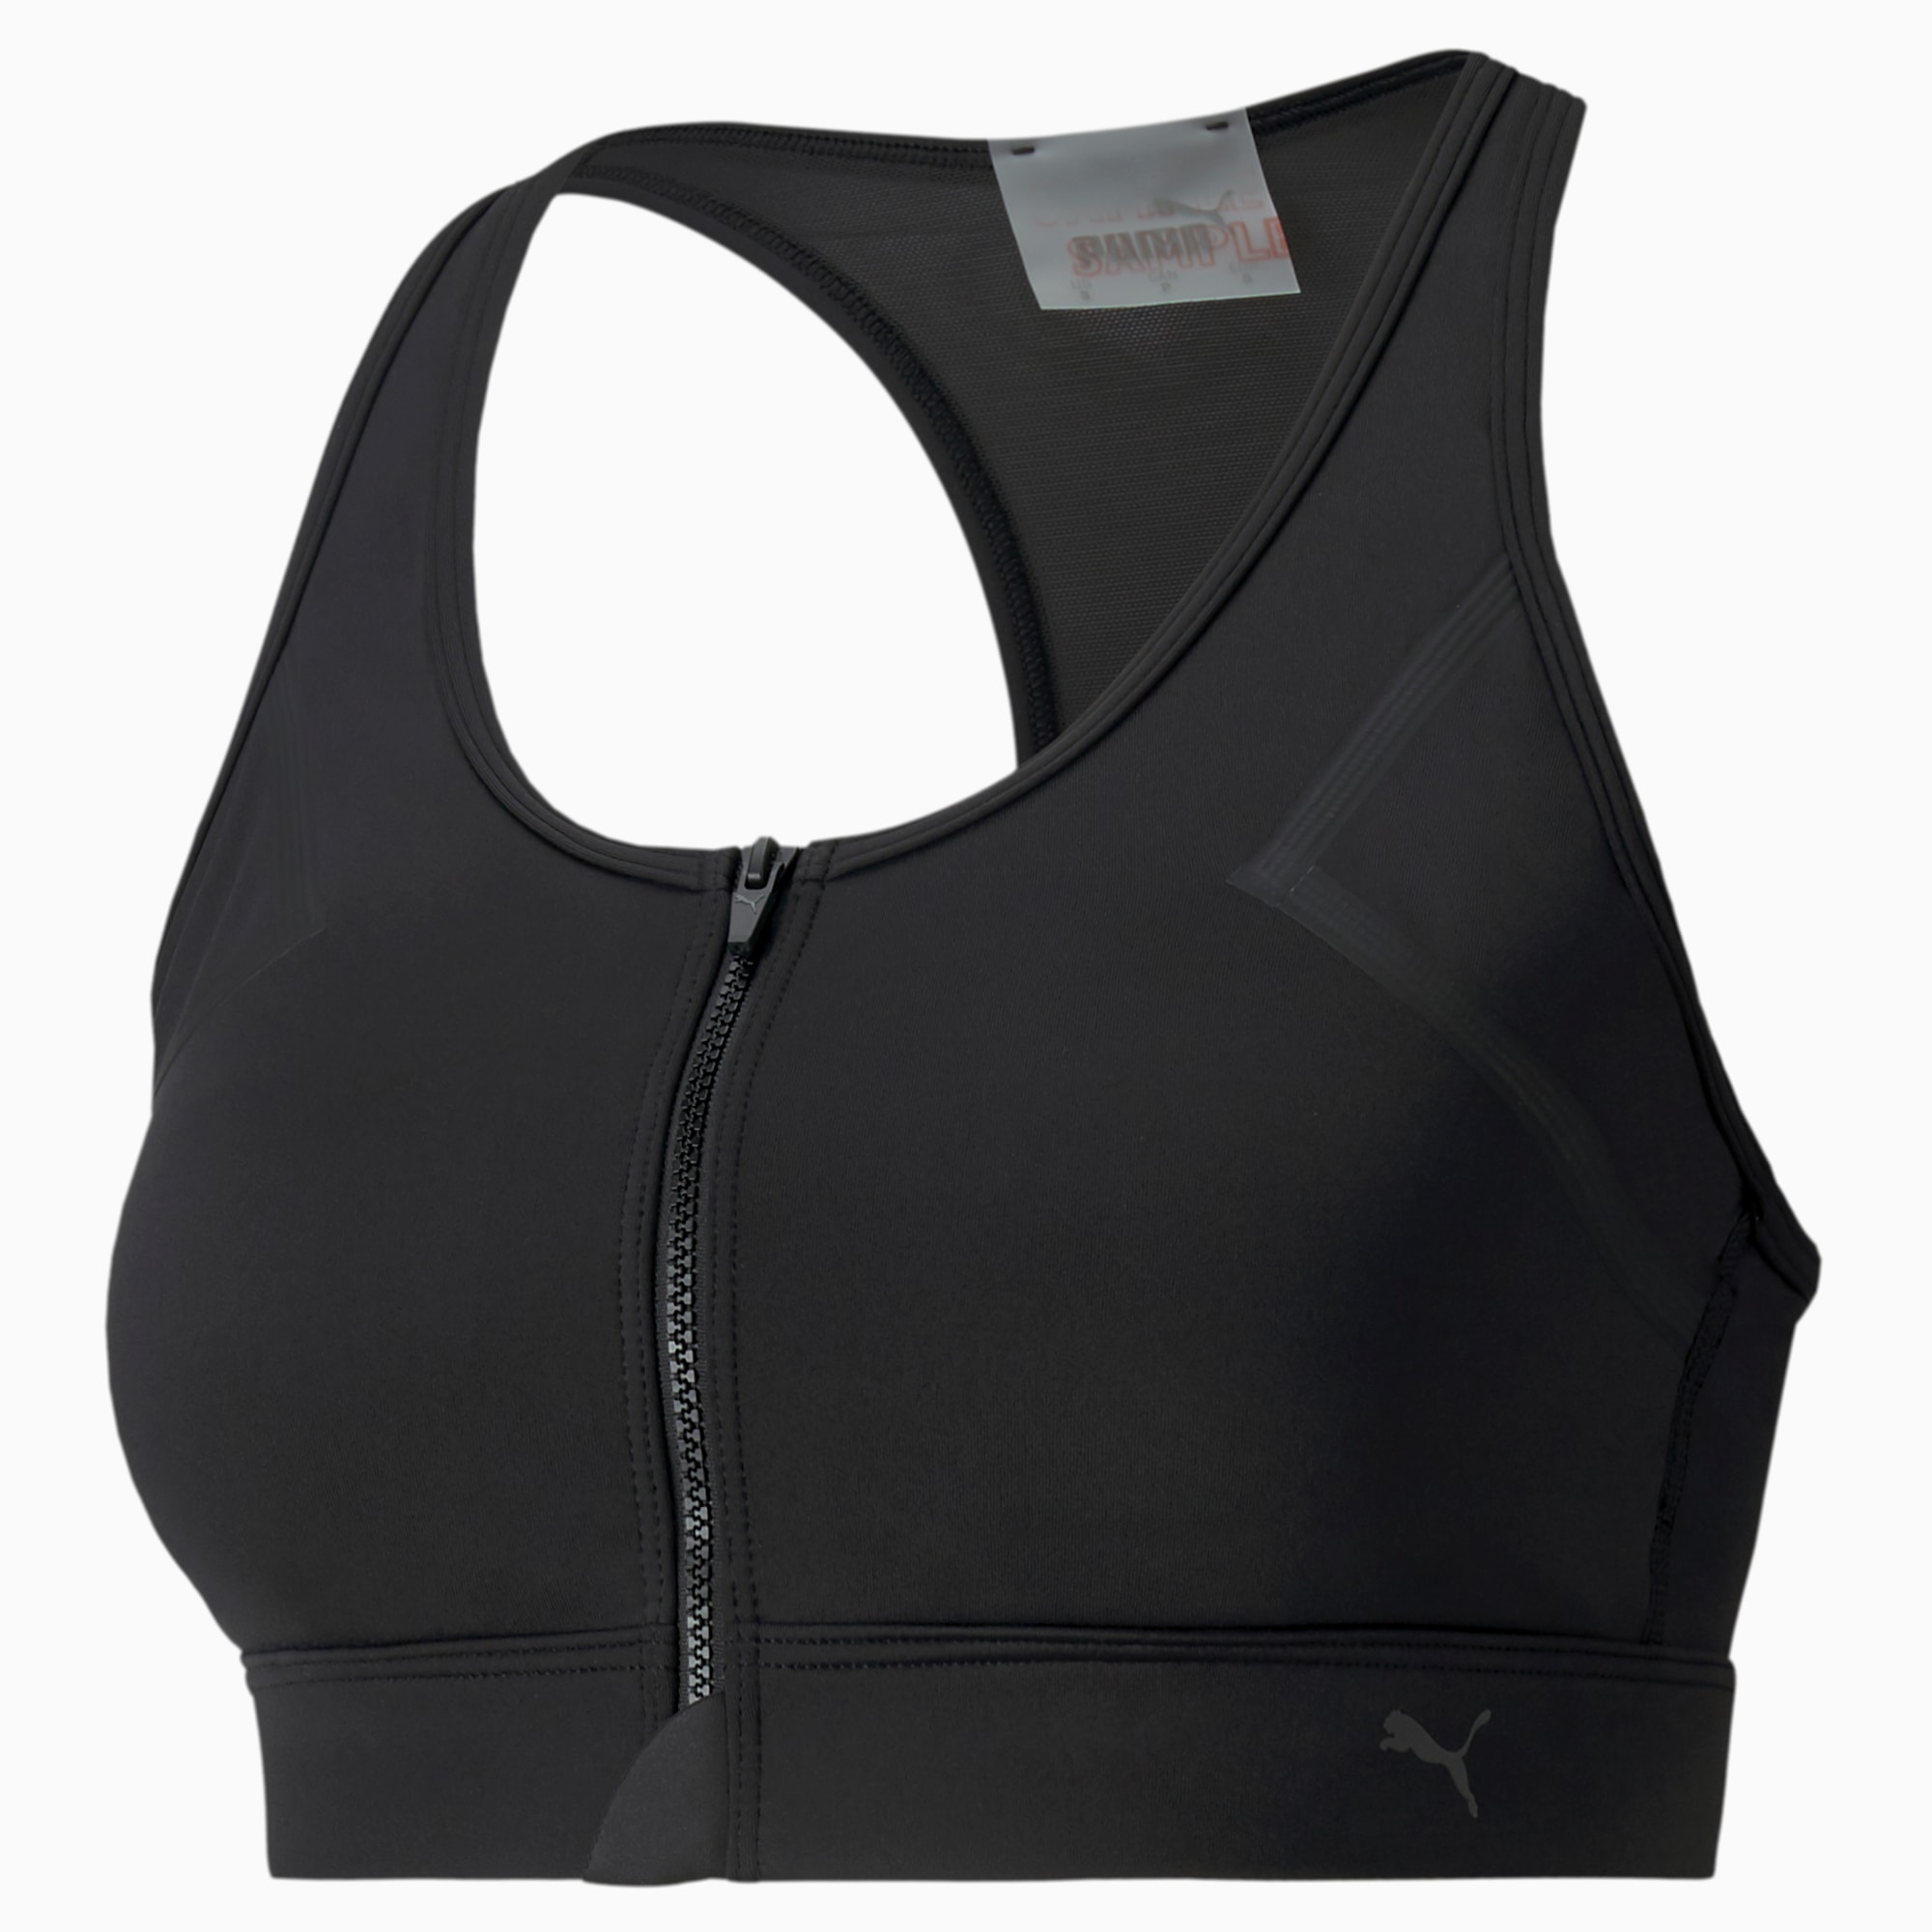 PUMA Running hi-shine sports bra in black